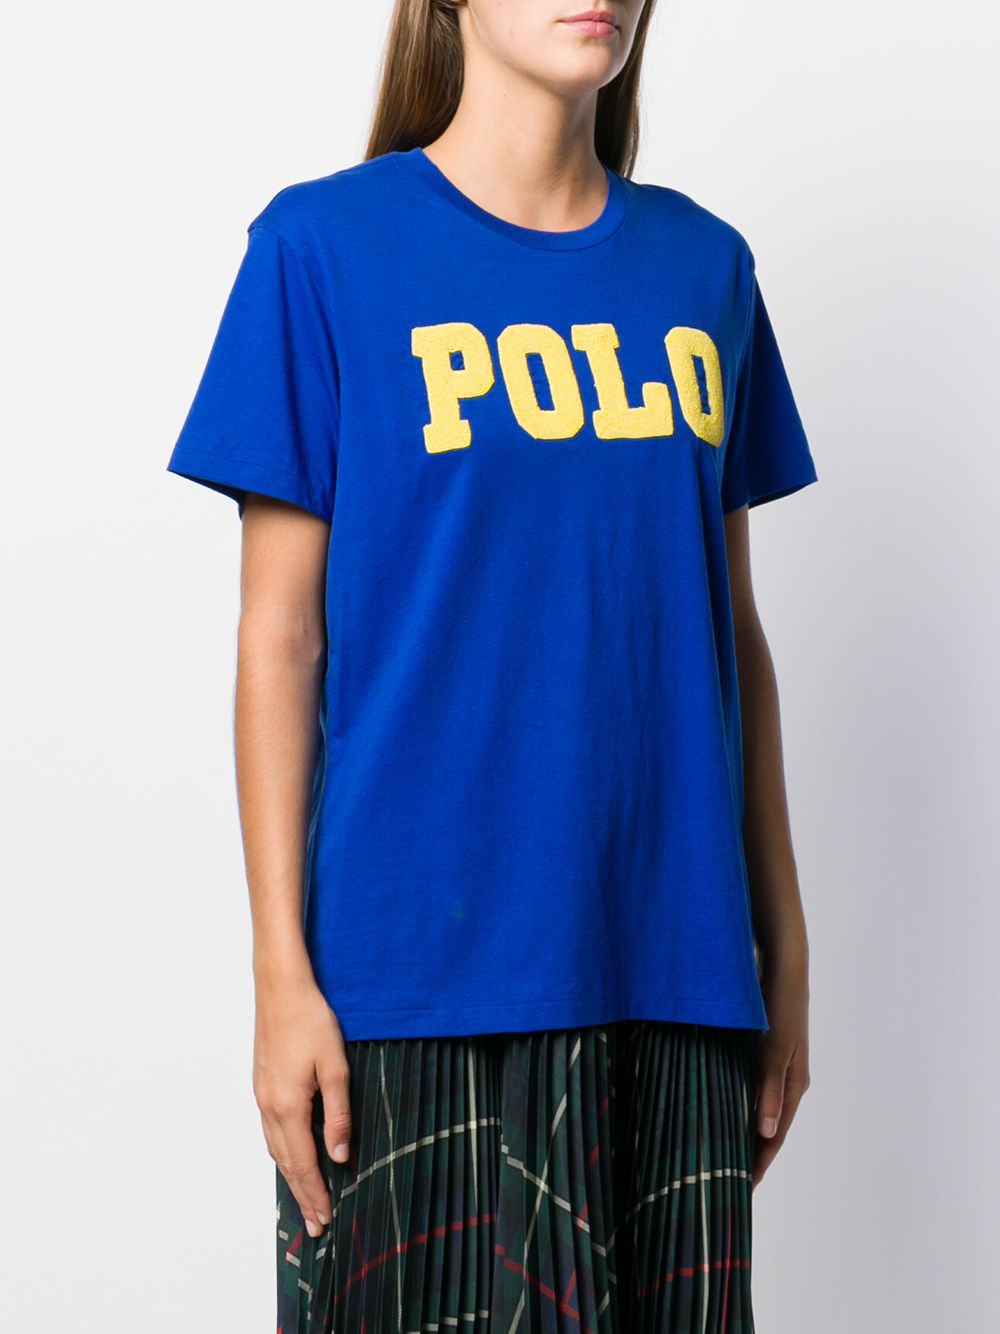 фото Polo Ralph Lauren футболка с декорированным логотипом